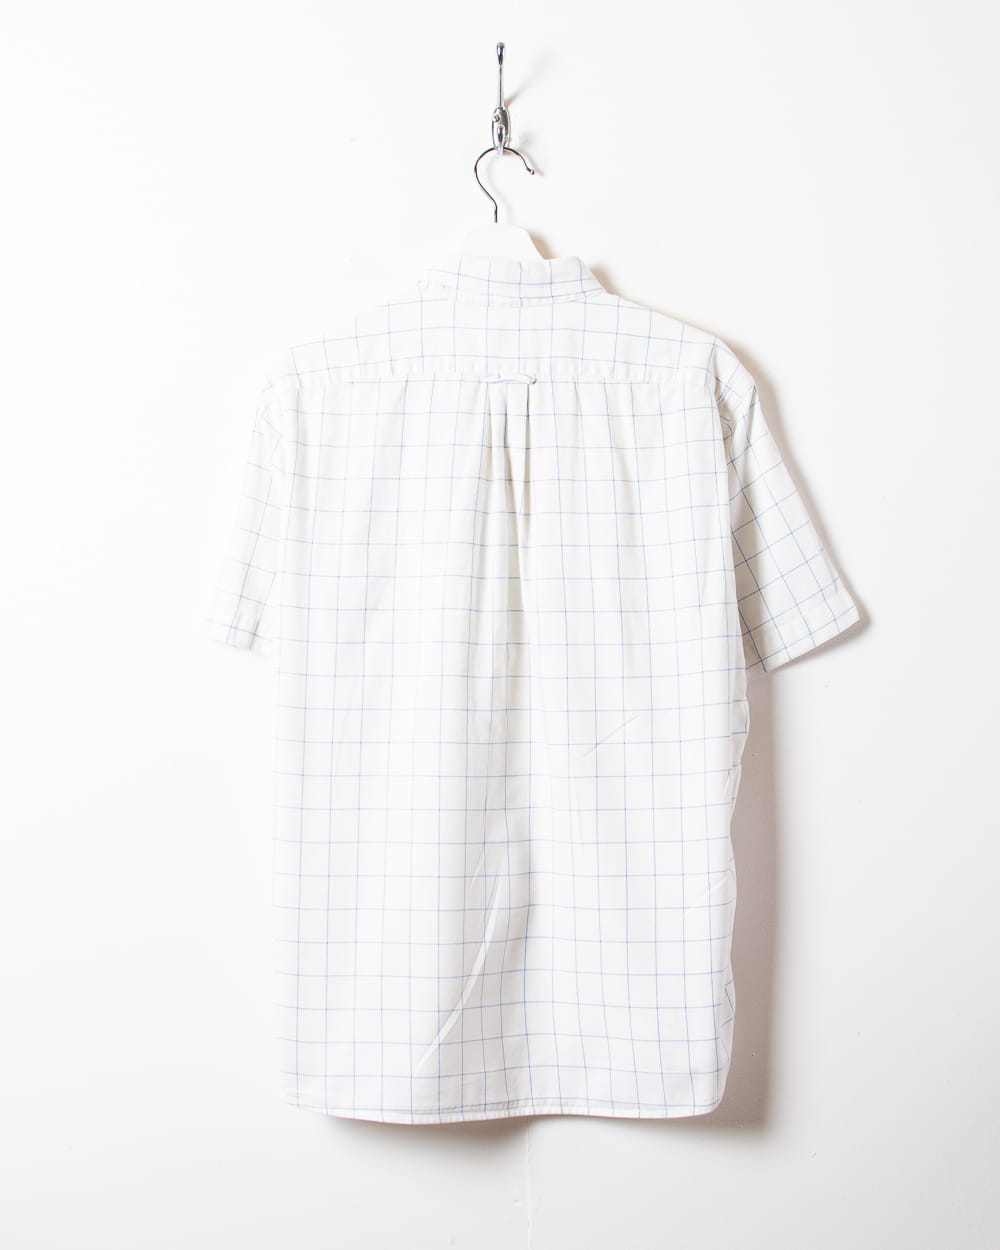 White Chemise Lacoste Checked Short Sleeved Shirt - Large